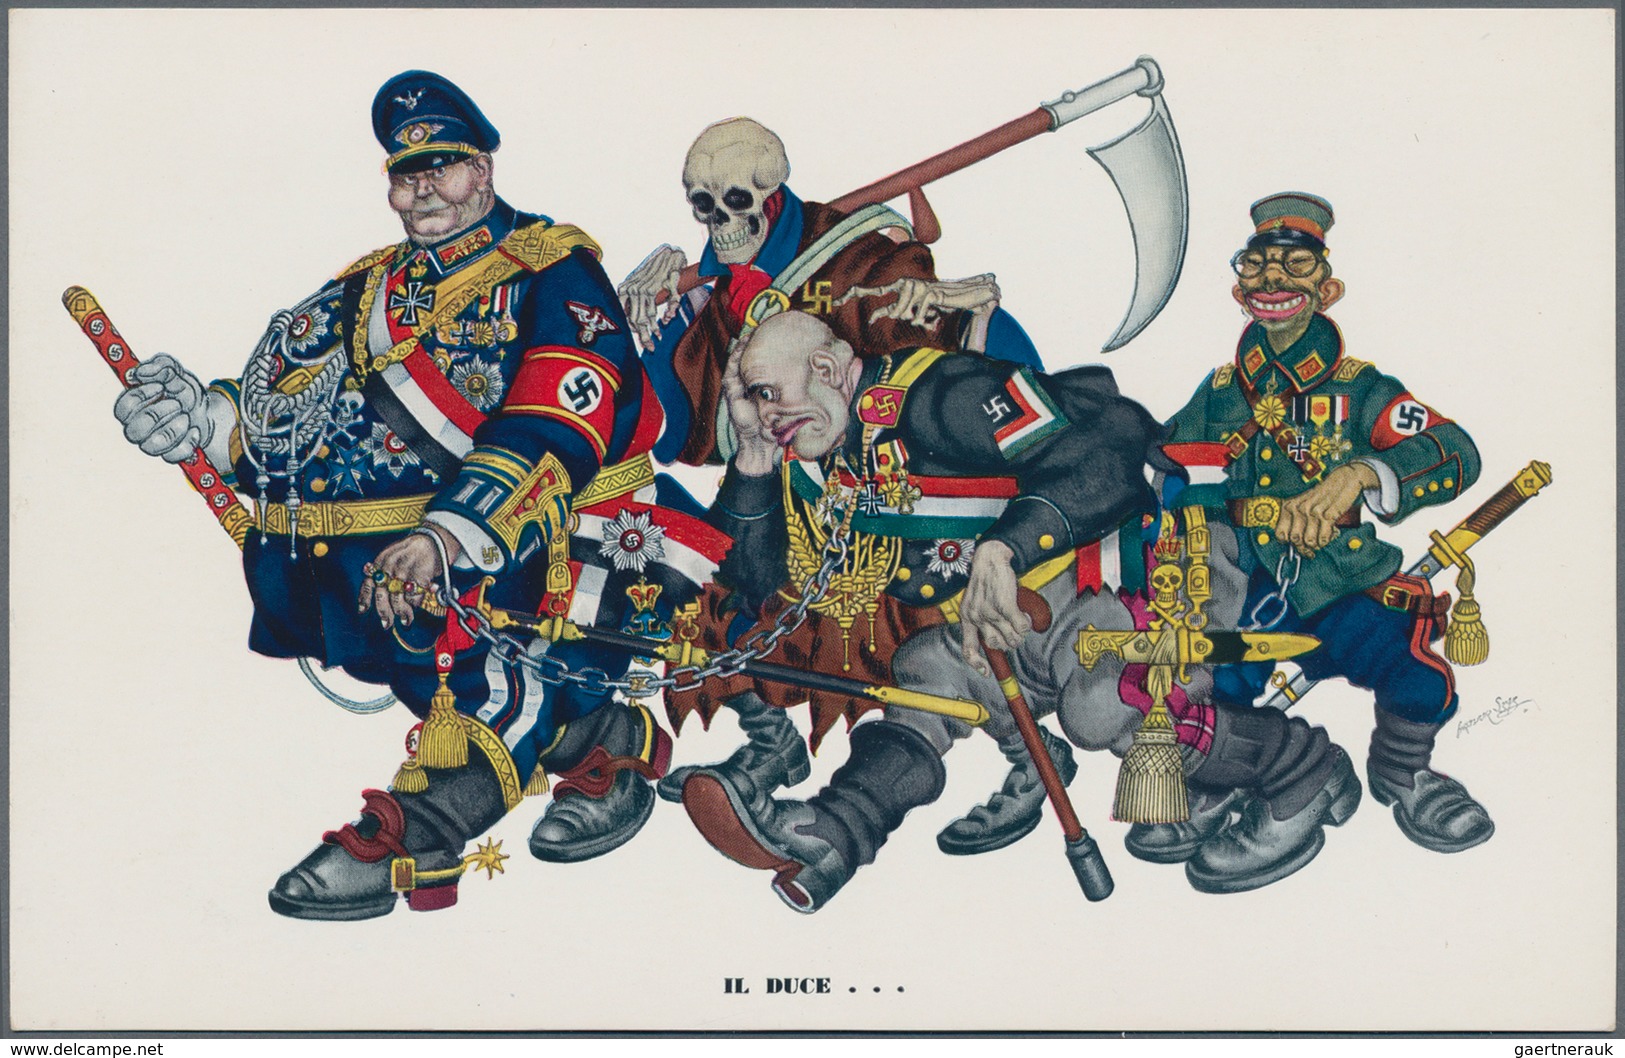 Ansichtskarten: Propaganda: 1939/1945: Bestand Von 88 Propagandakarten, Meist Bessere Motive, In übe - Parteien & Wahlen